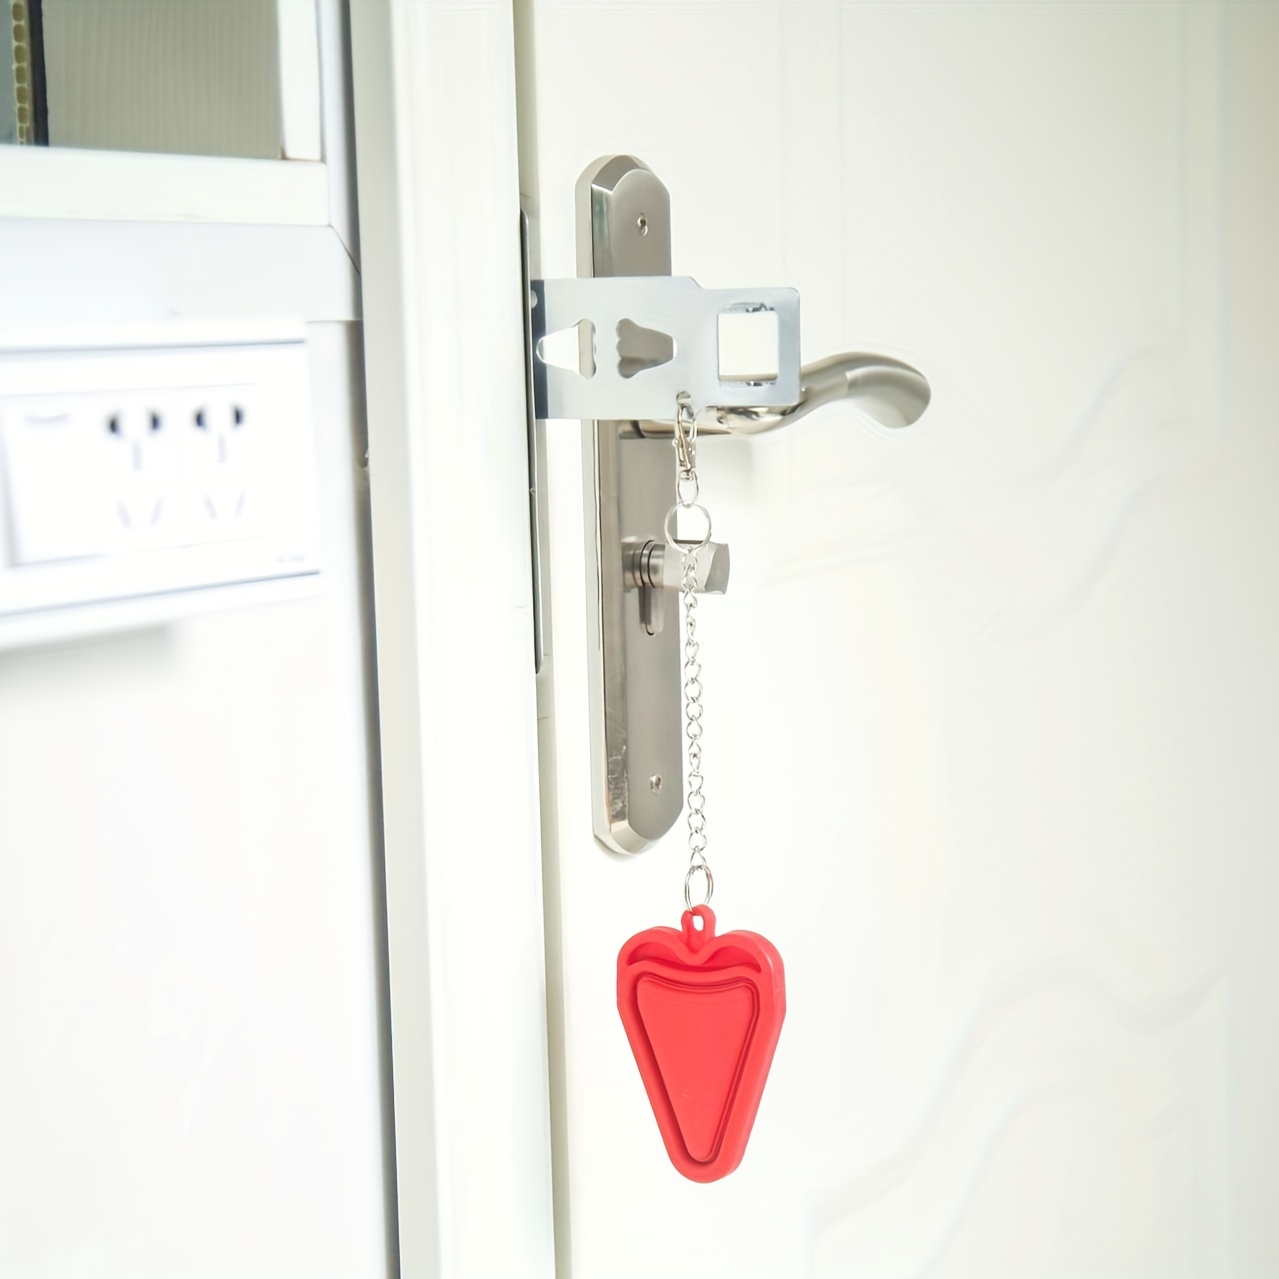 cerradura de puerta portátil de 1 pieza, casillero de puerta de seguridad para el hogar, adecuado para viajes, hoteles, apartamentos familiares, proporciona seguridad y privacidad adicionales sports & outdoors